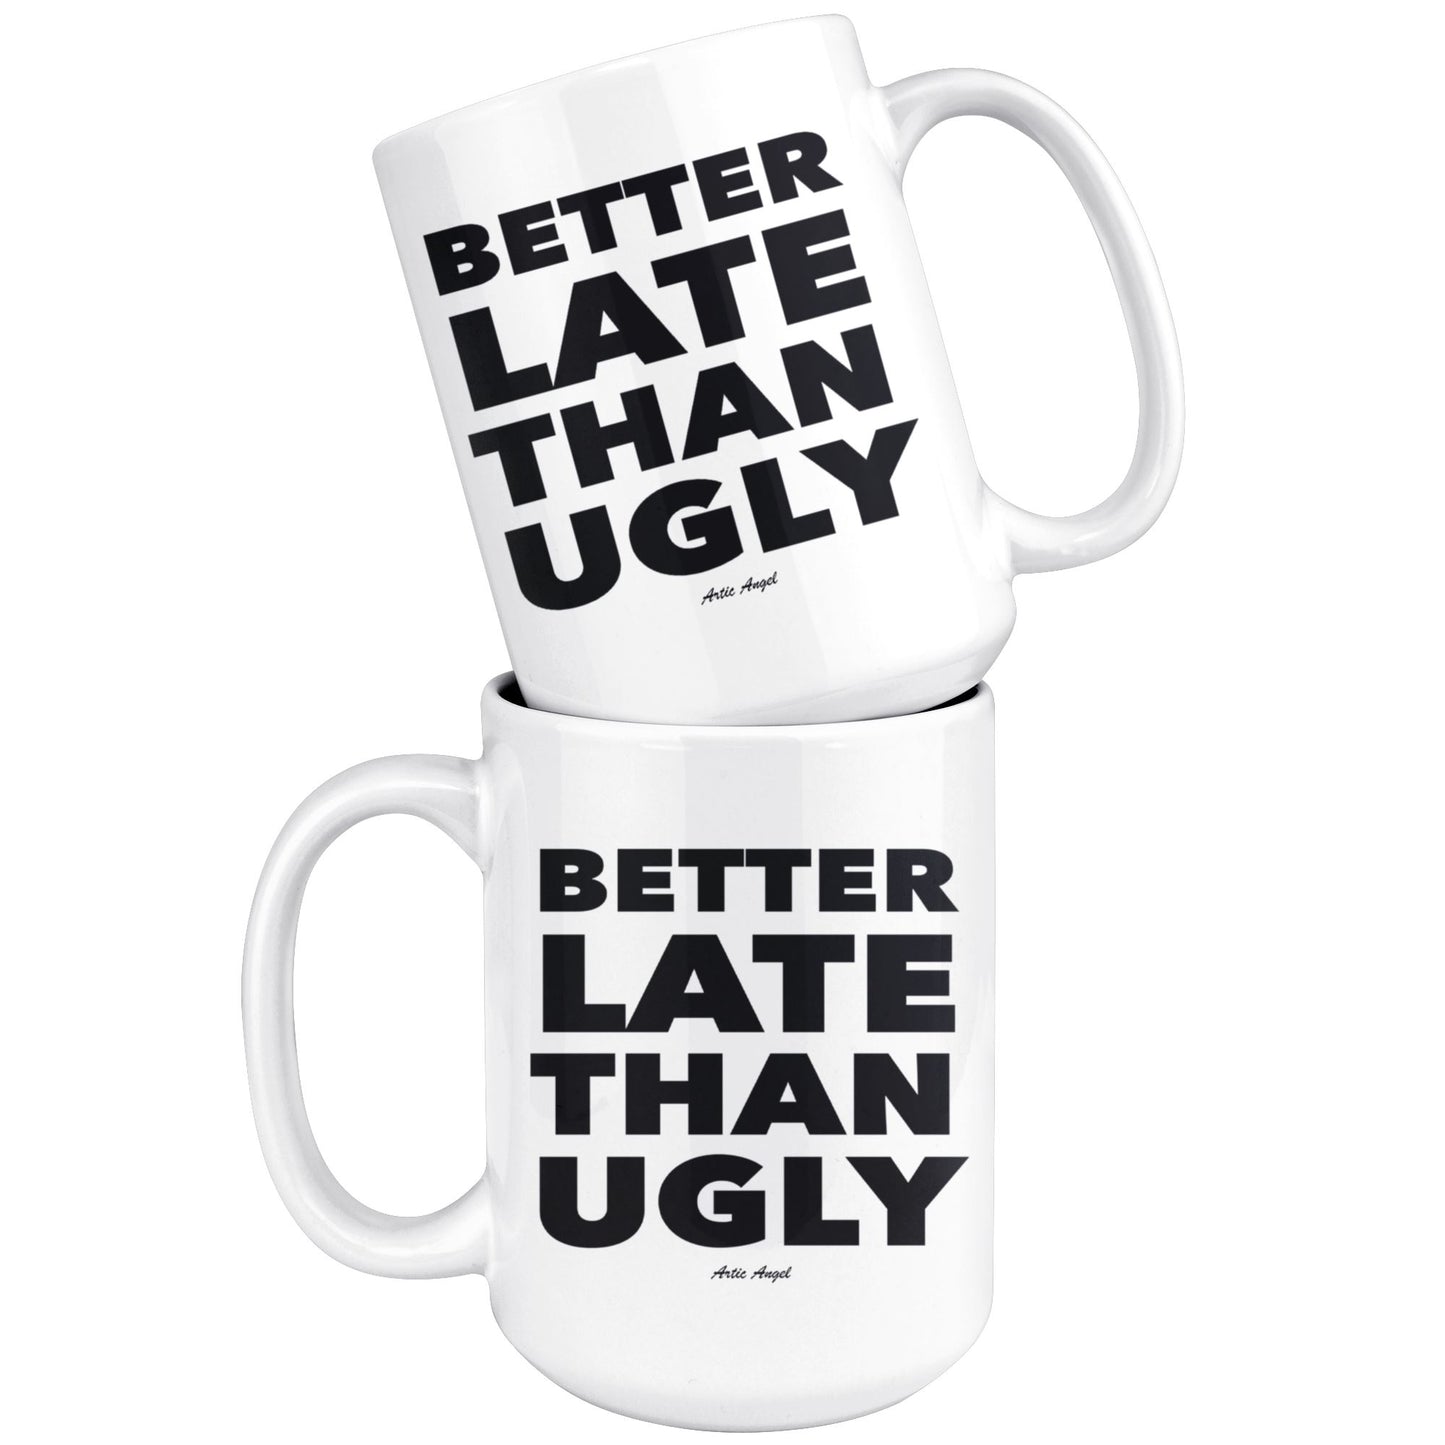 Funny "Better Late Than Ugly" - Coffee Mug Drinkware 